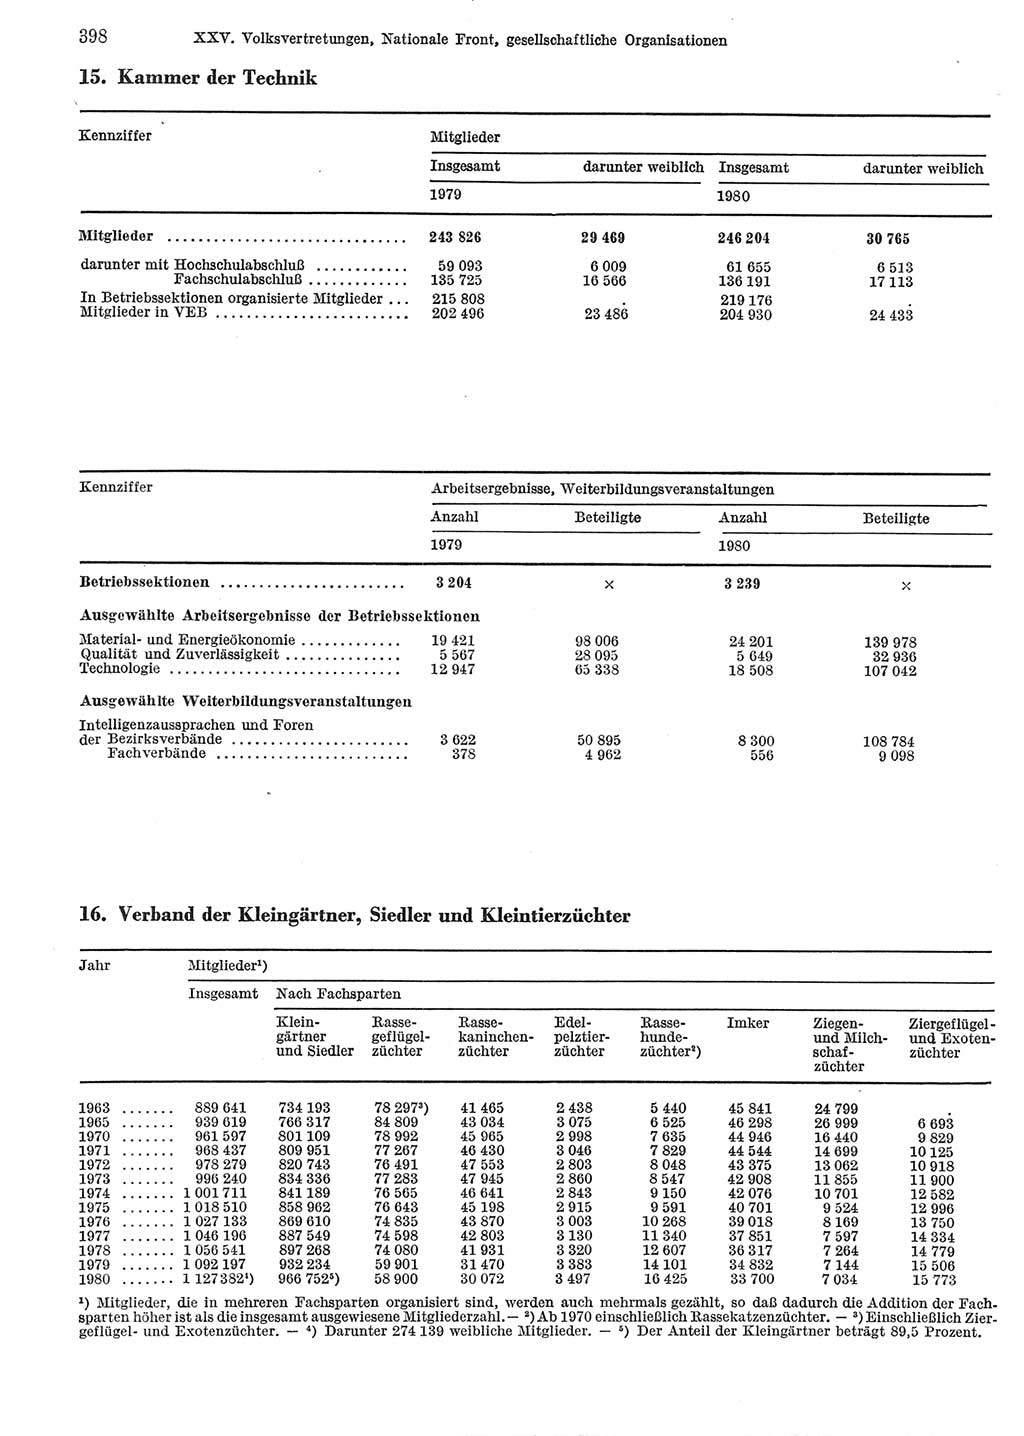 Statistisches Jahrbuch der Deutschen Demokratischen Republik (DDR) 1981, Seite 398 (Stat. Jb. DDR 1981, S. 398)